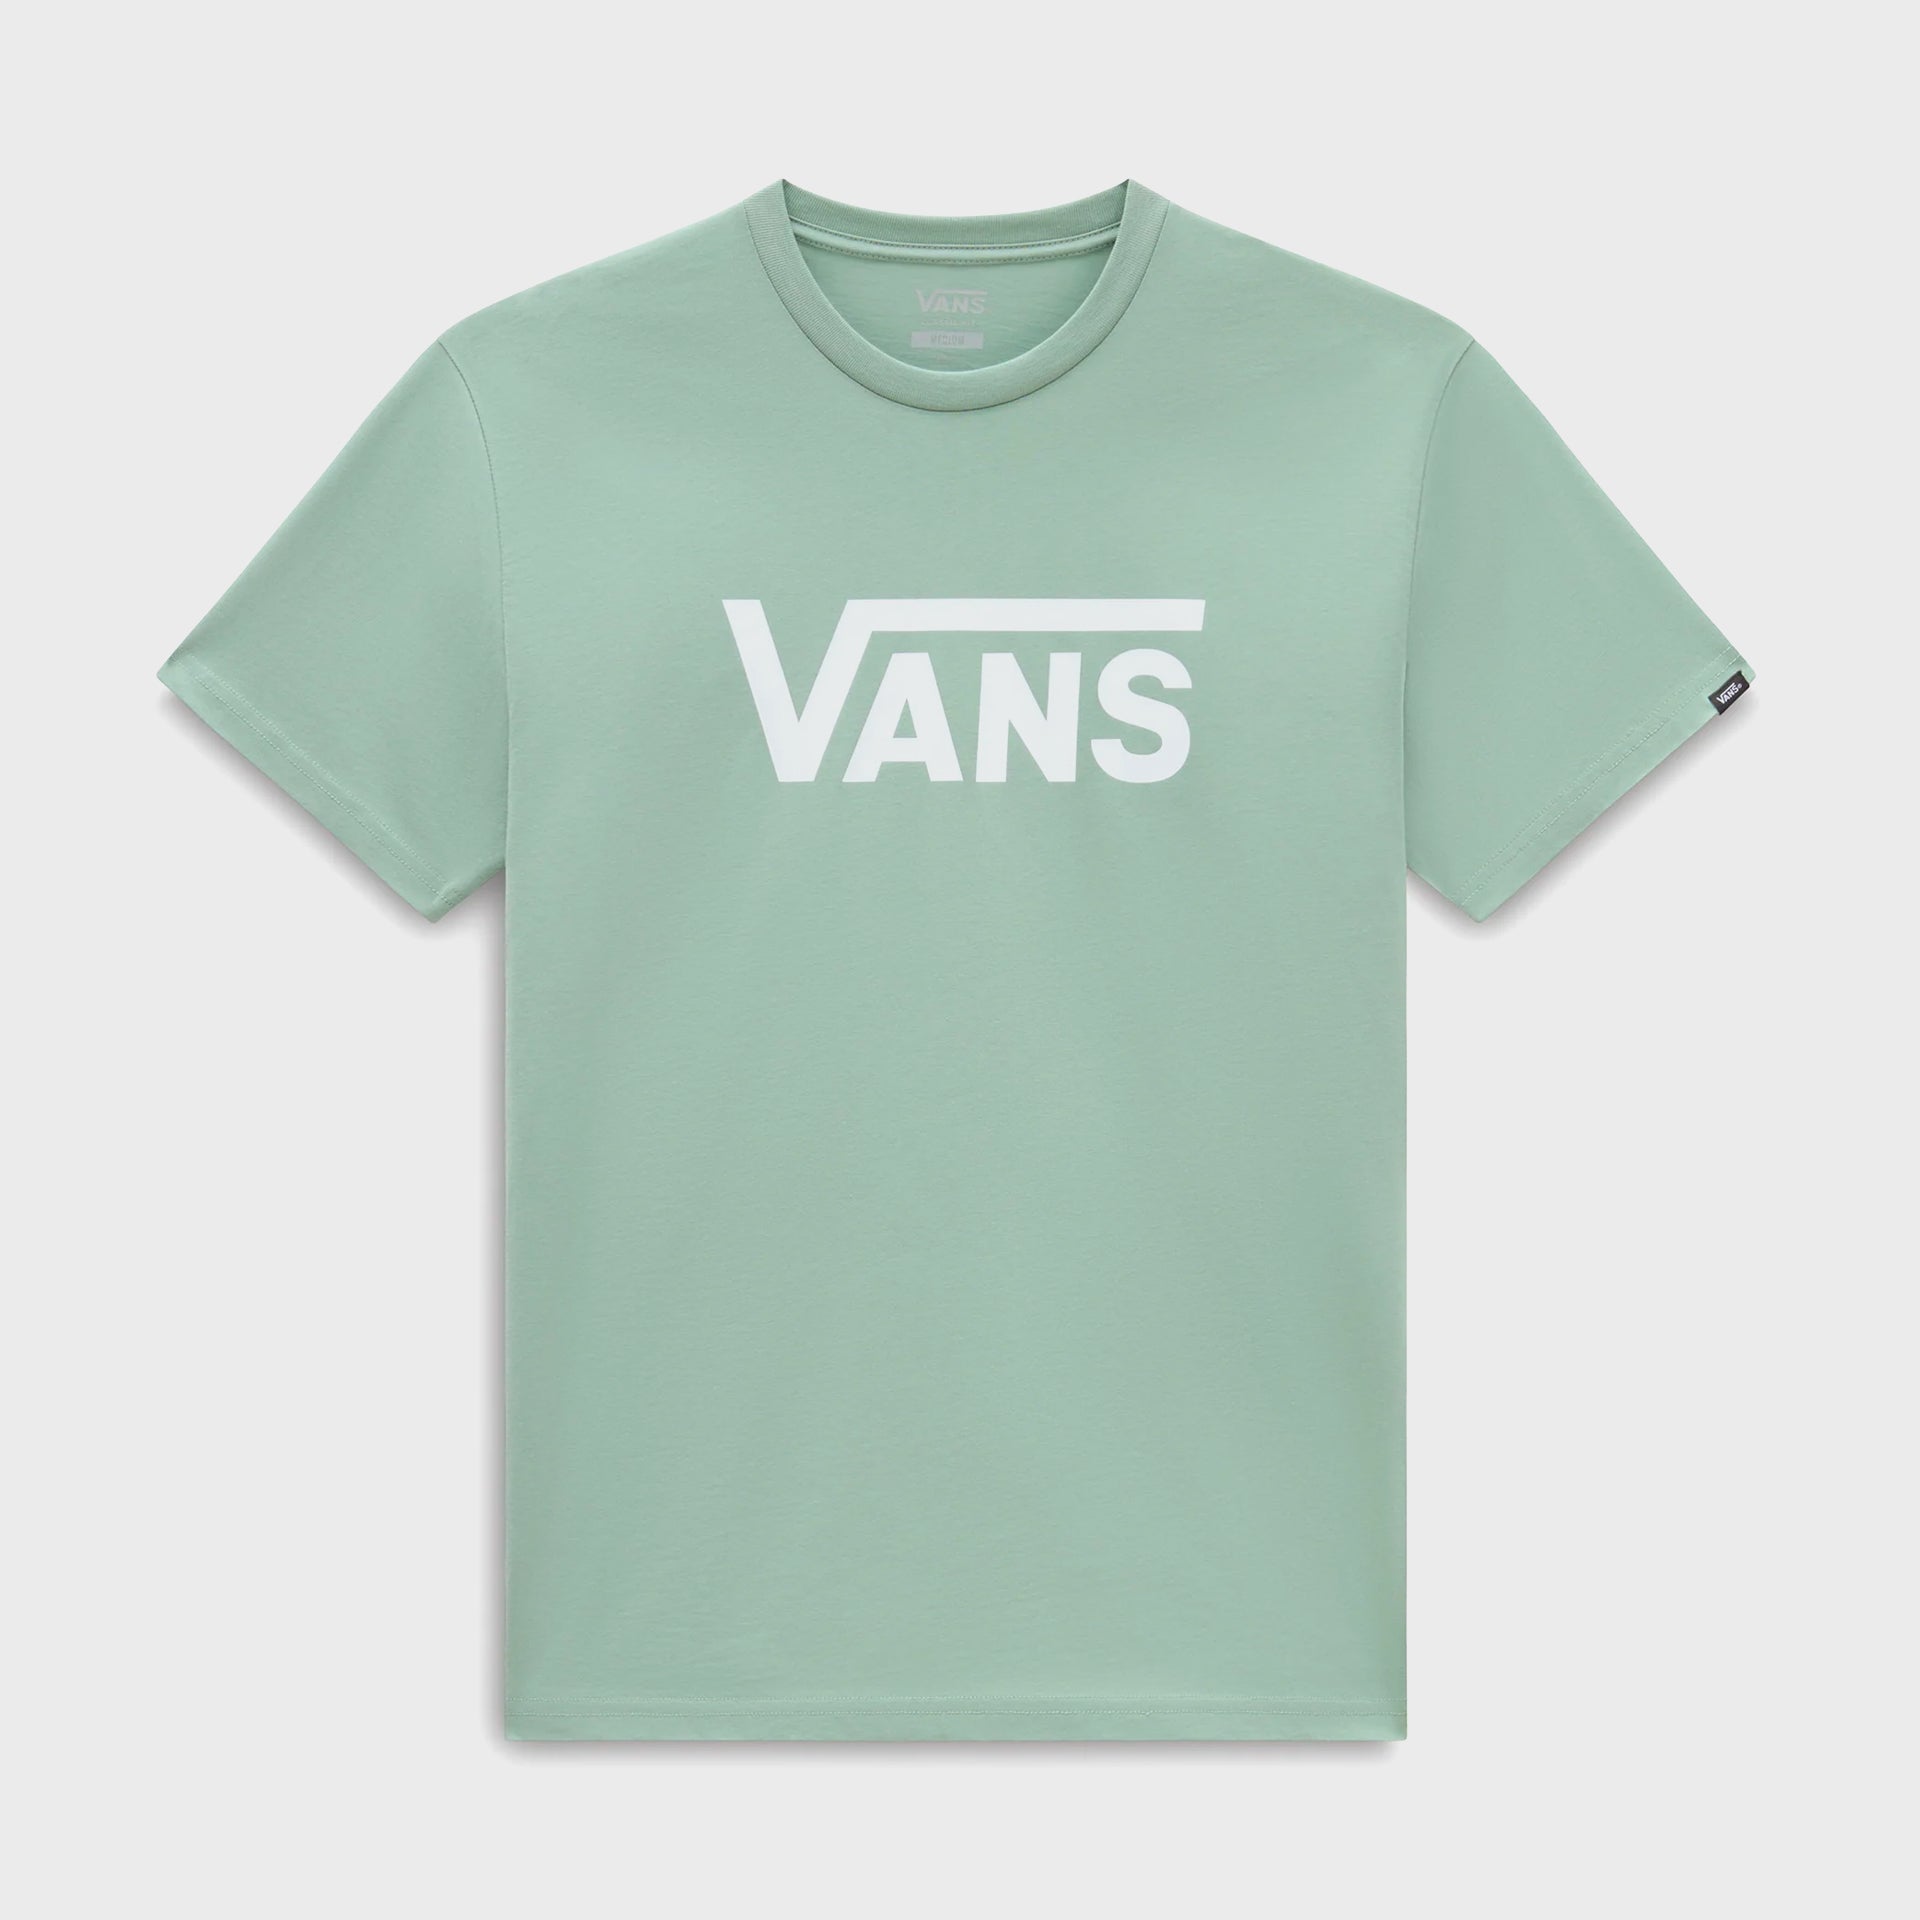 Vans Mens Vans Classic T-Shirt - Iceberg Green/White - ManGo Surfing